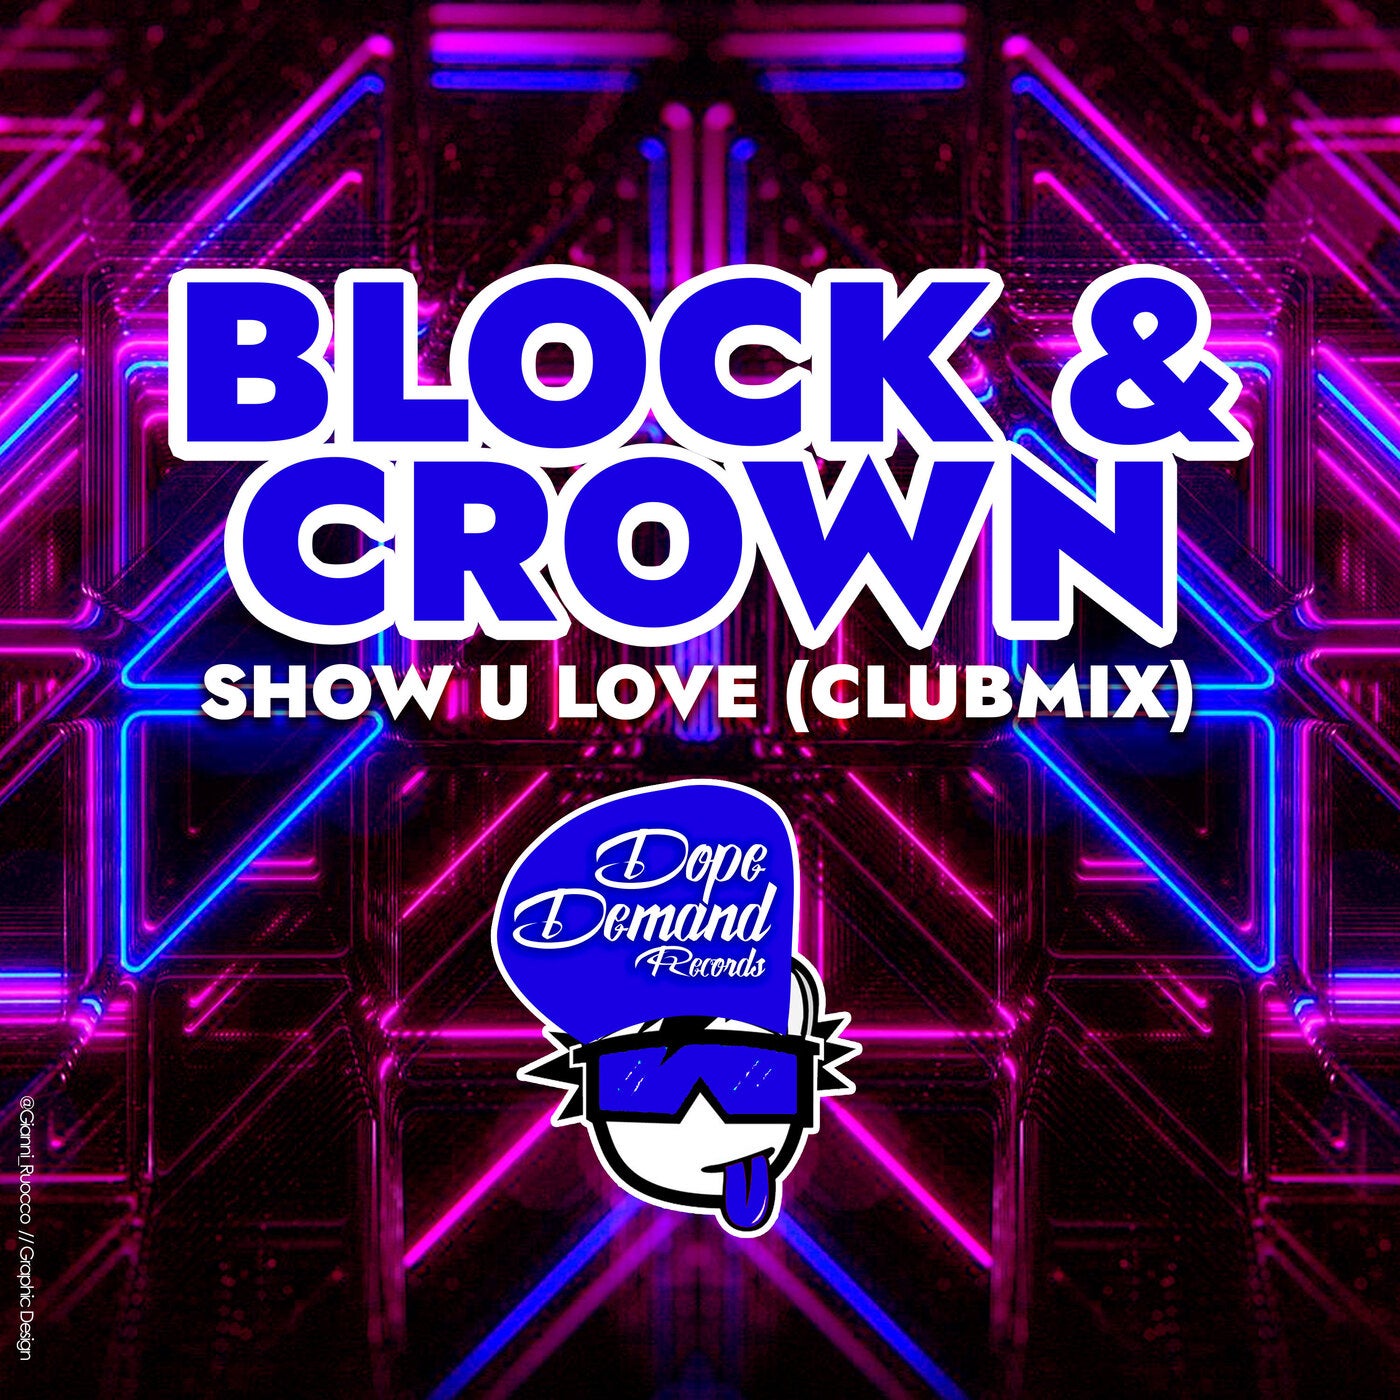 Show U Love (Clubmix)